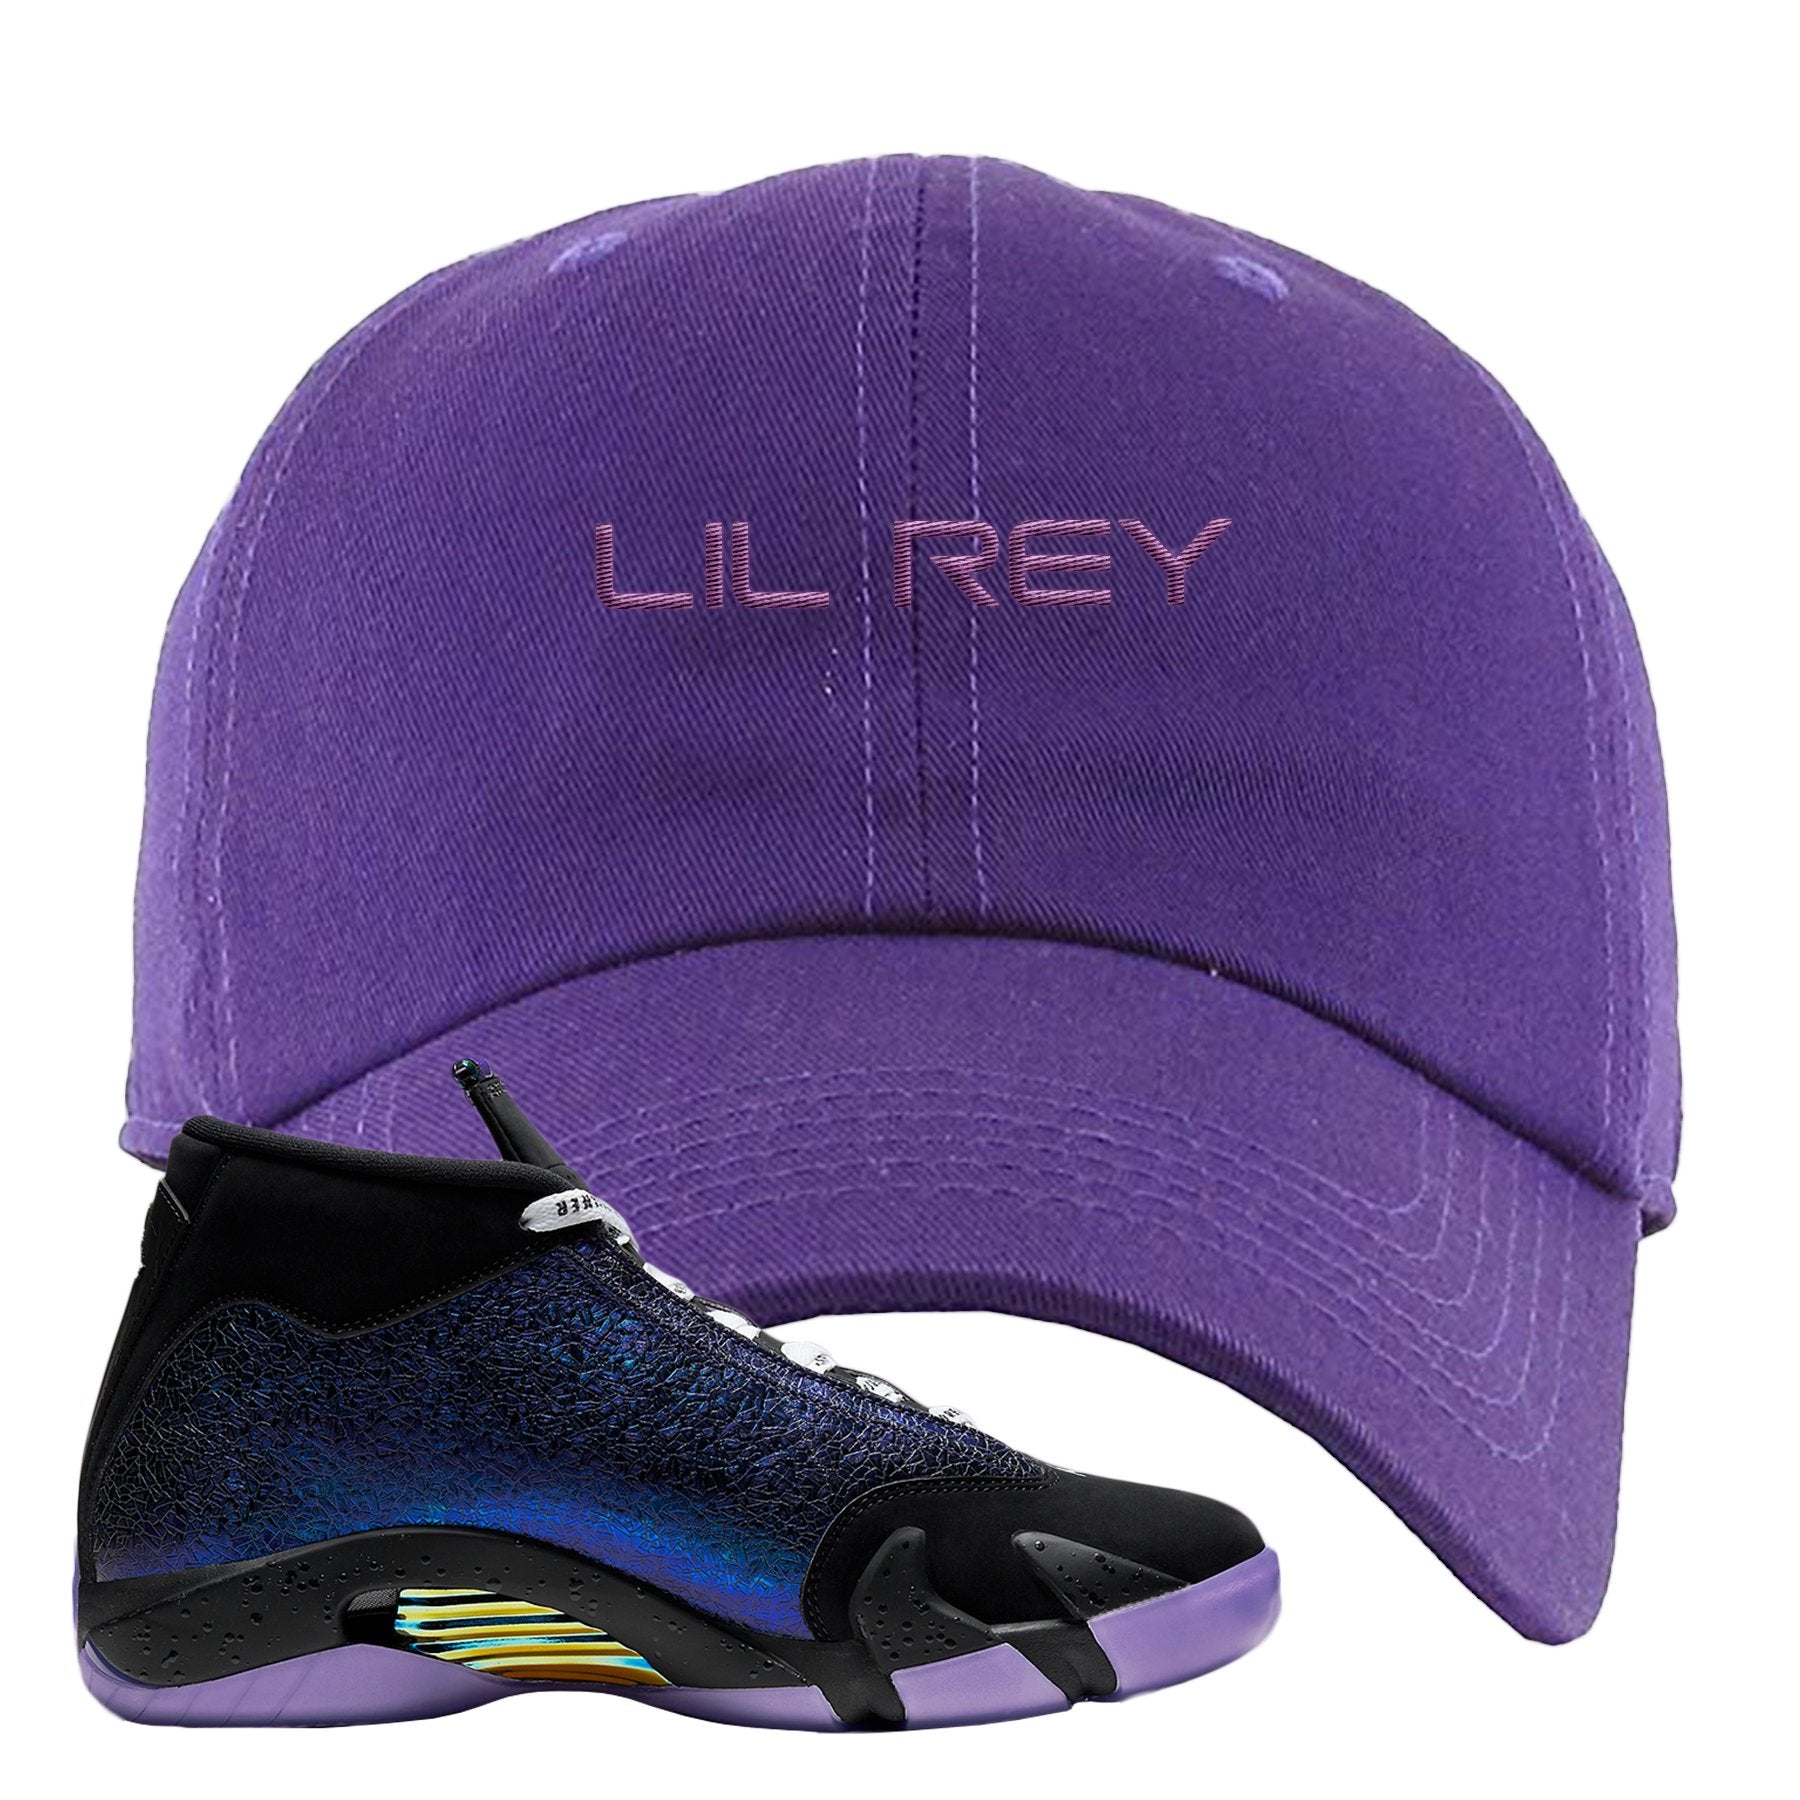 Doernbecher 14s Dad Hat | Lil Rey, Purple